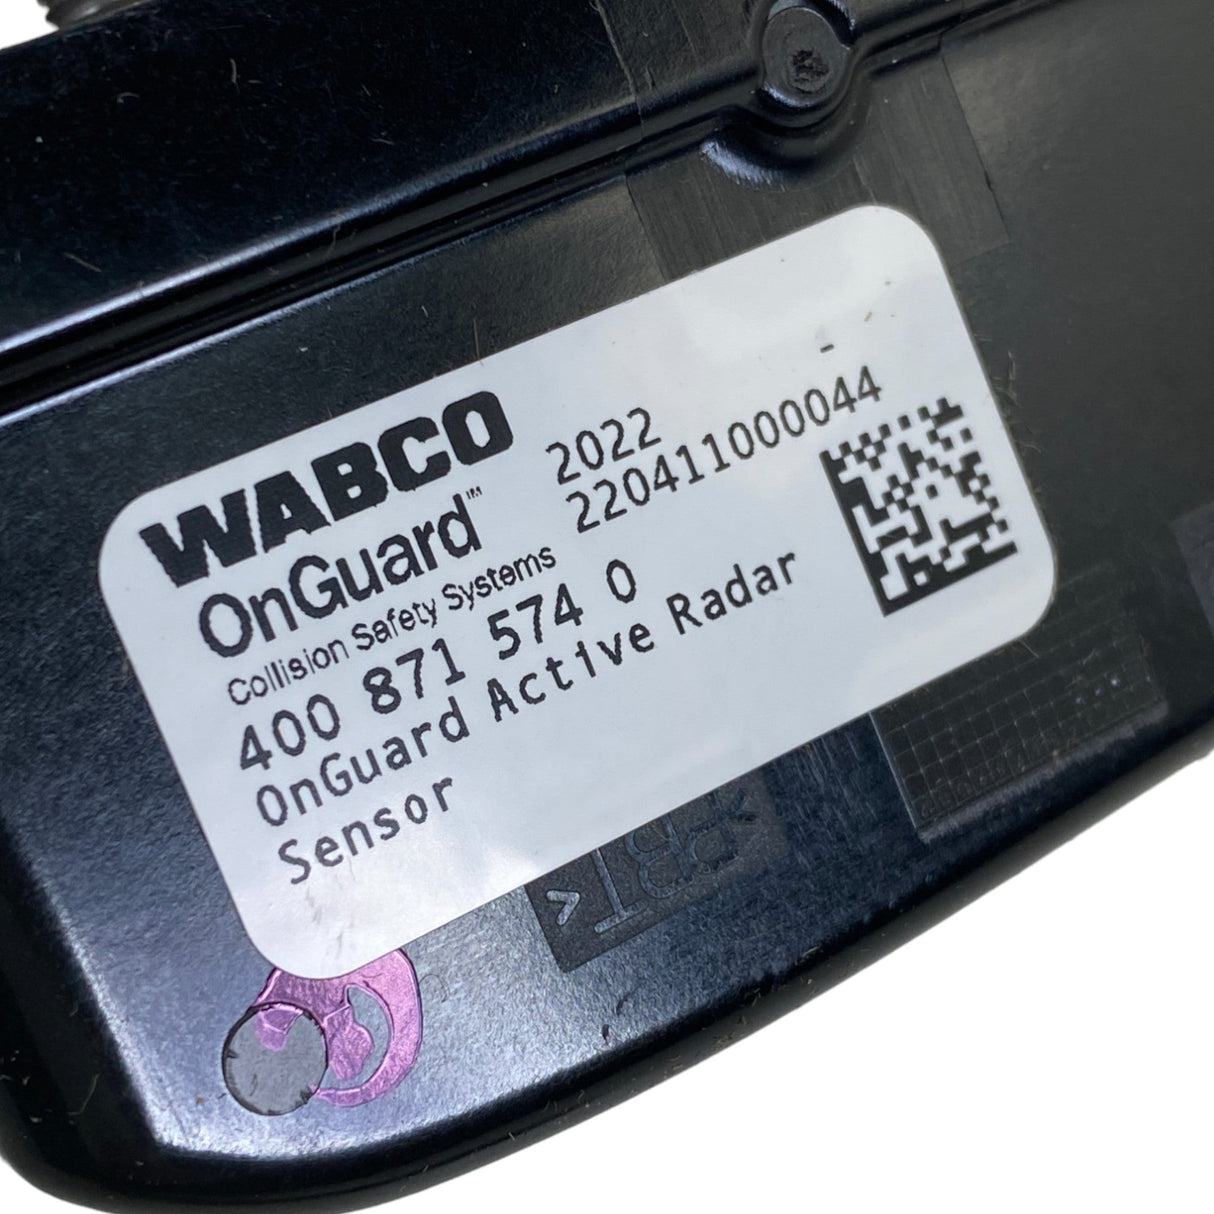 WAB 400 871 574 0 Genuine Wabco ADAS Onguard Radar Distance Sensor Assembly